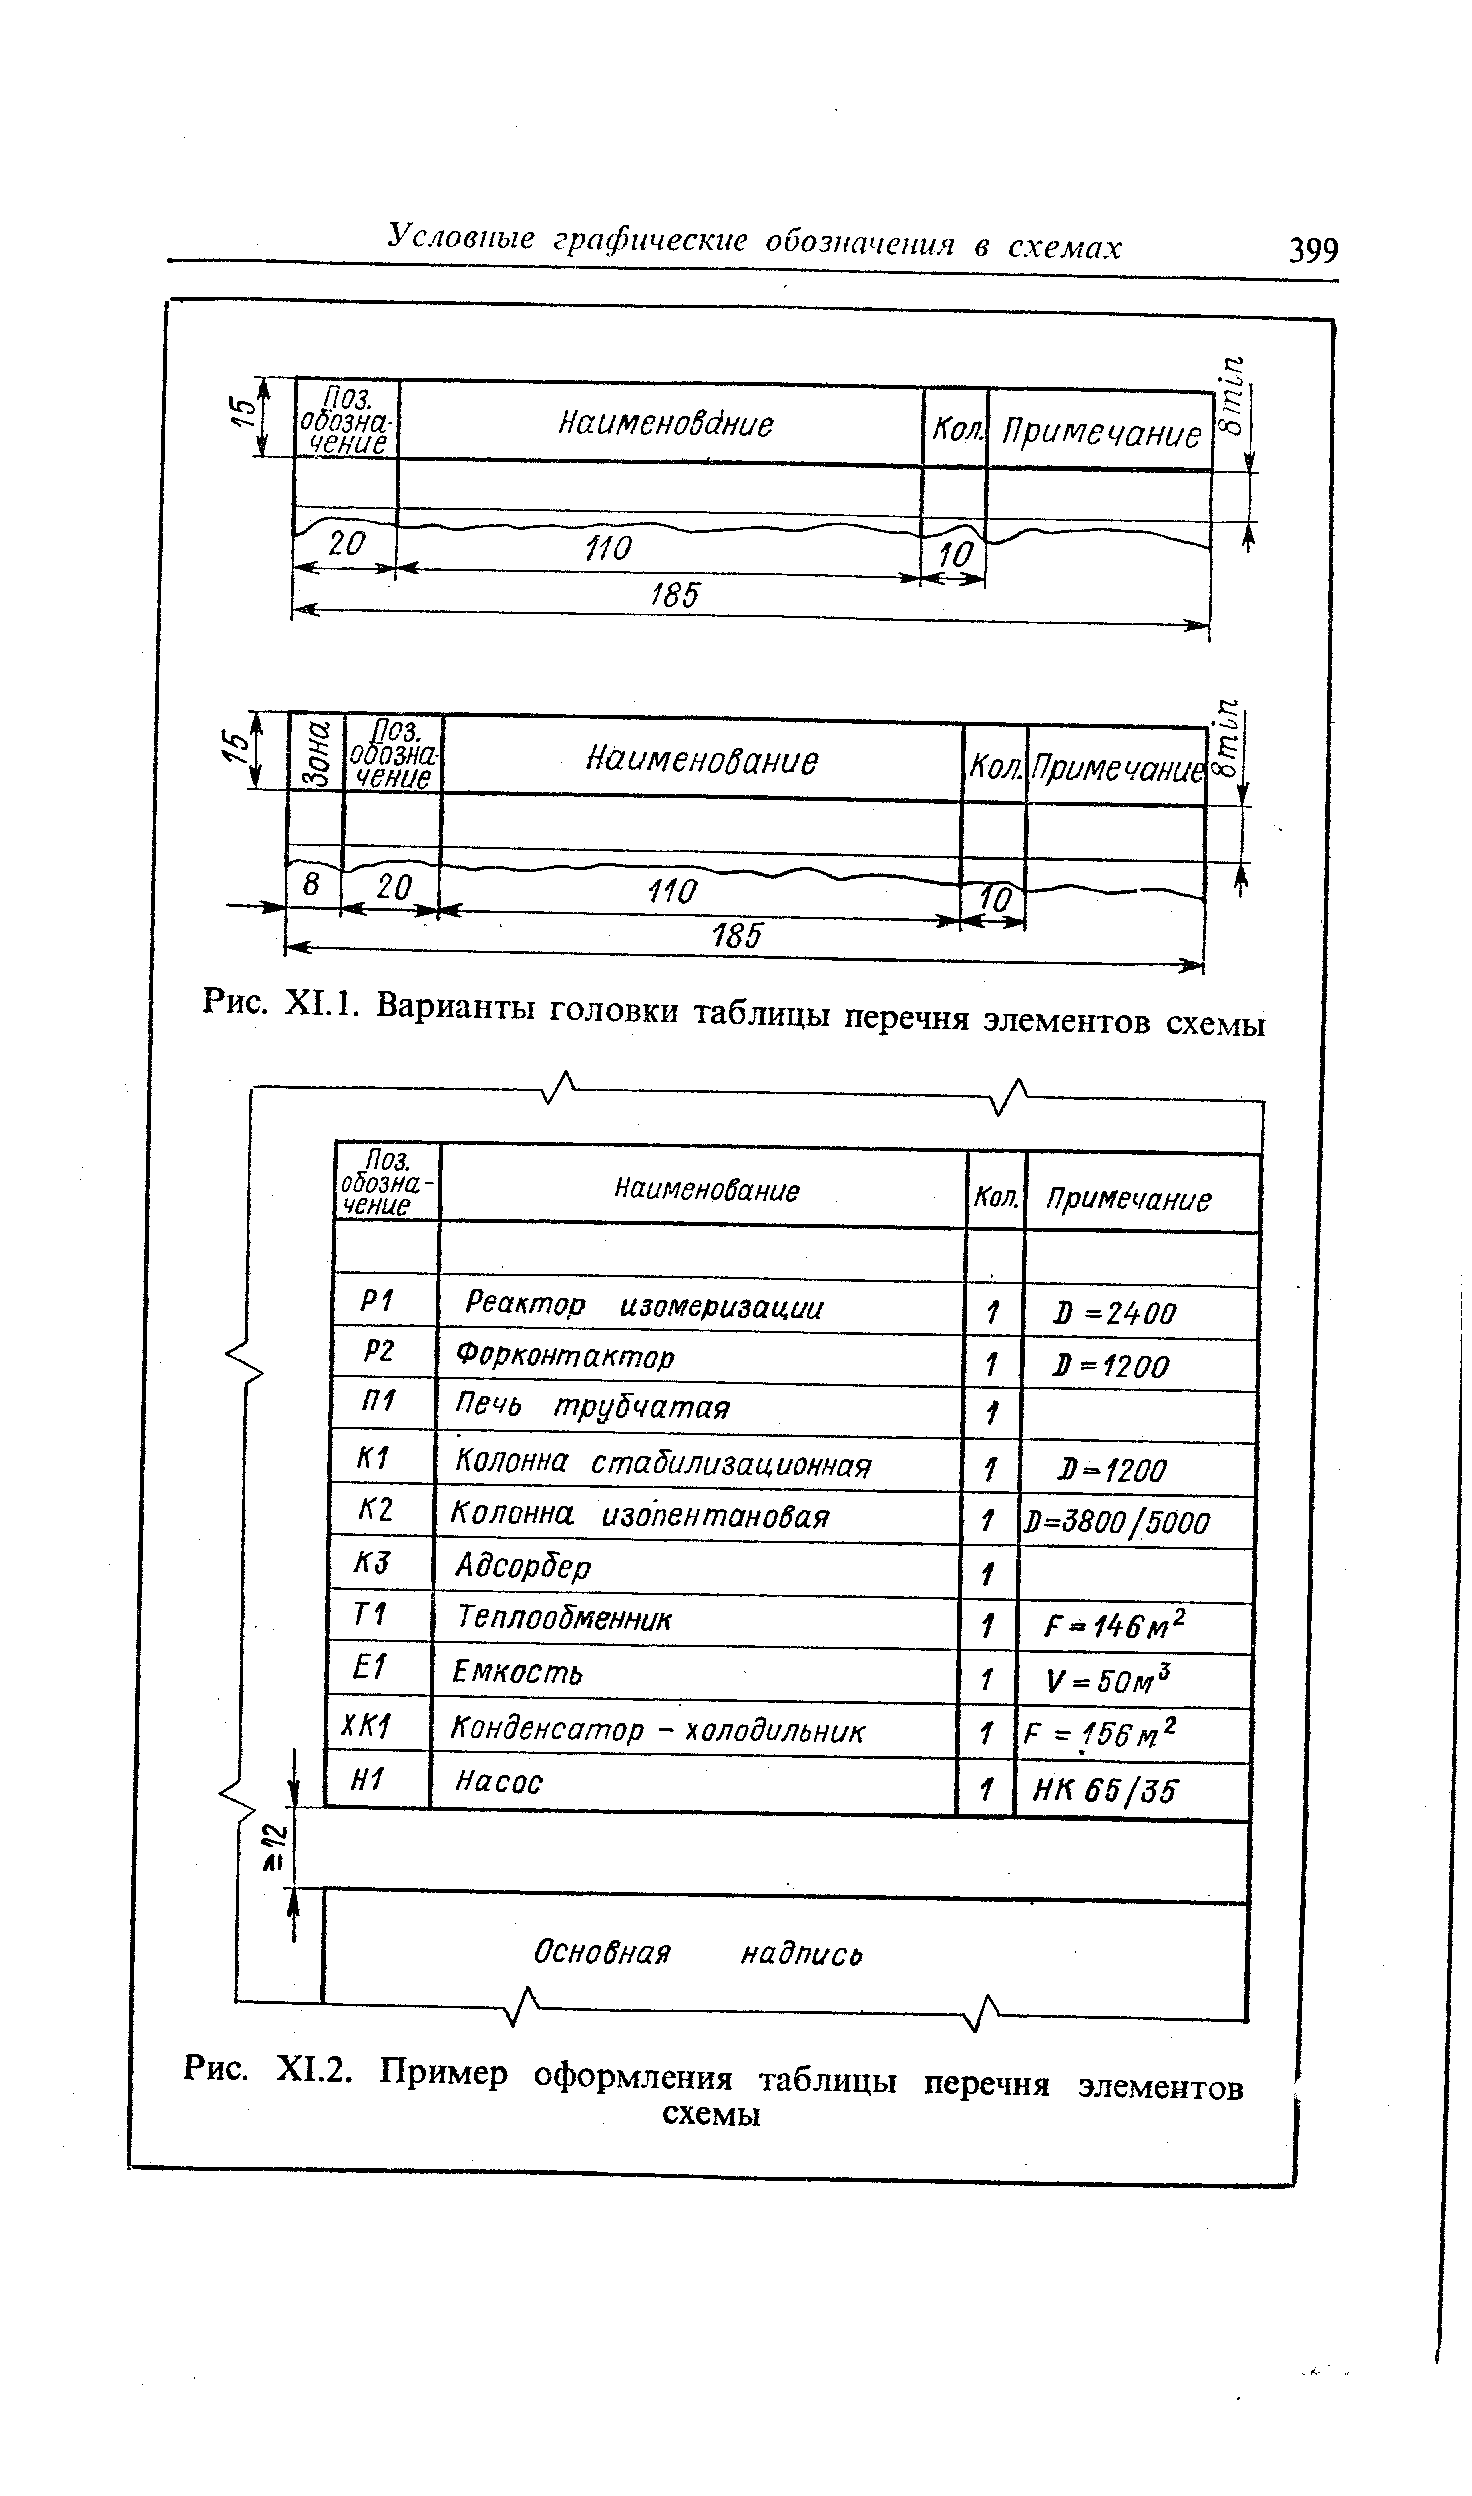 Рис. XI.2. Пример оформления таблицы перечня элементов
